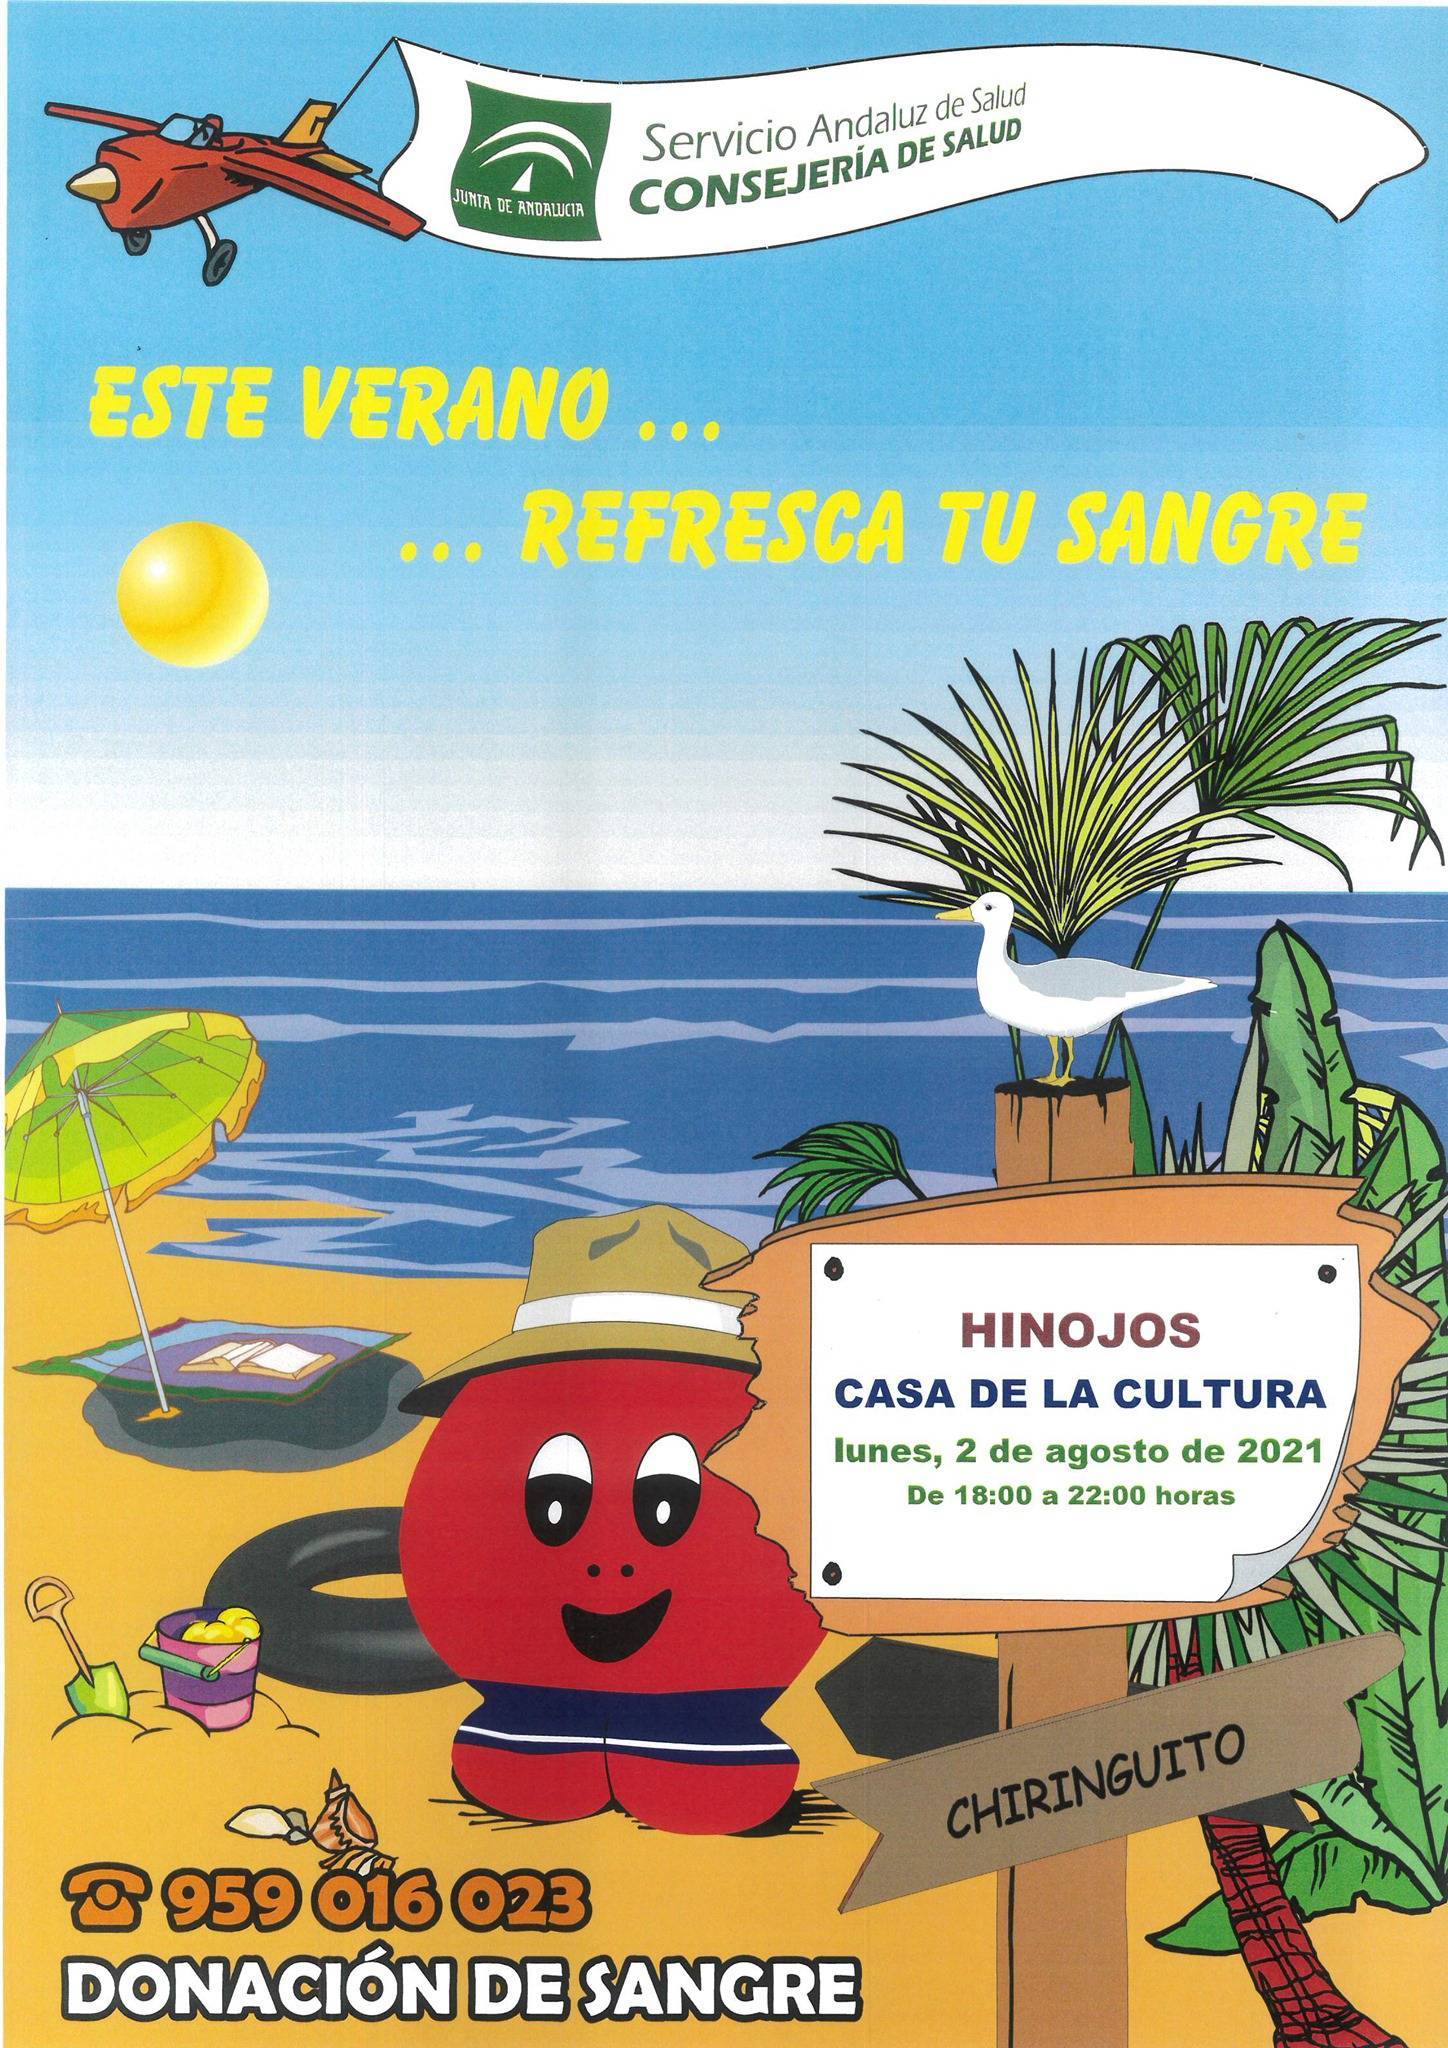 Donación de sangre (agosto 2021) - Hinojos (Huelva)